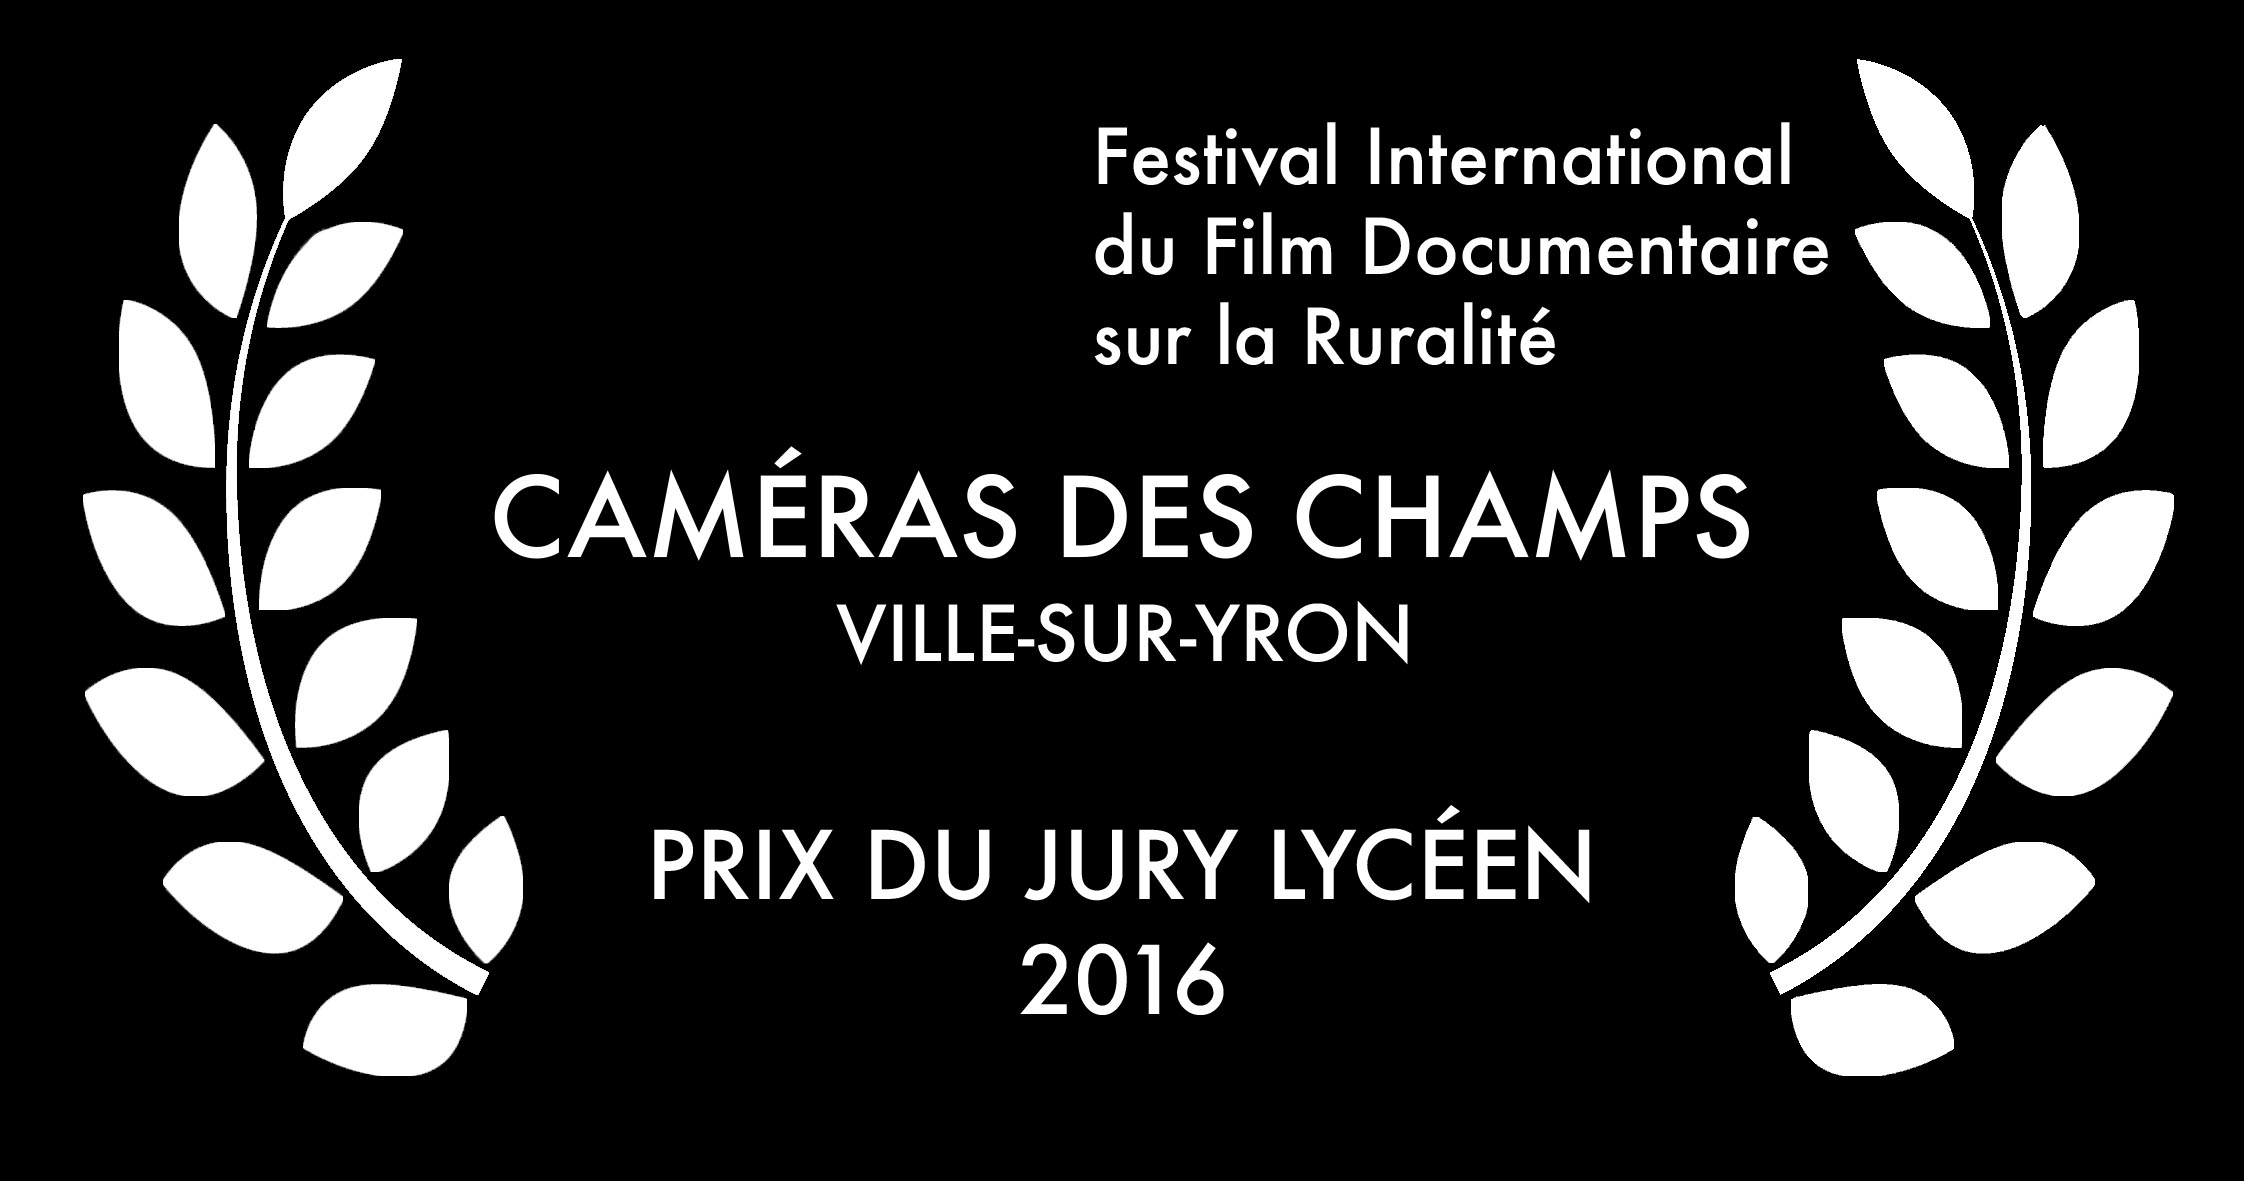 Festival International du Film Documentaire sur la Ruralité 2016 - Prix du jury lycéen